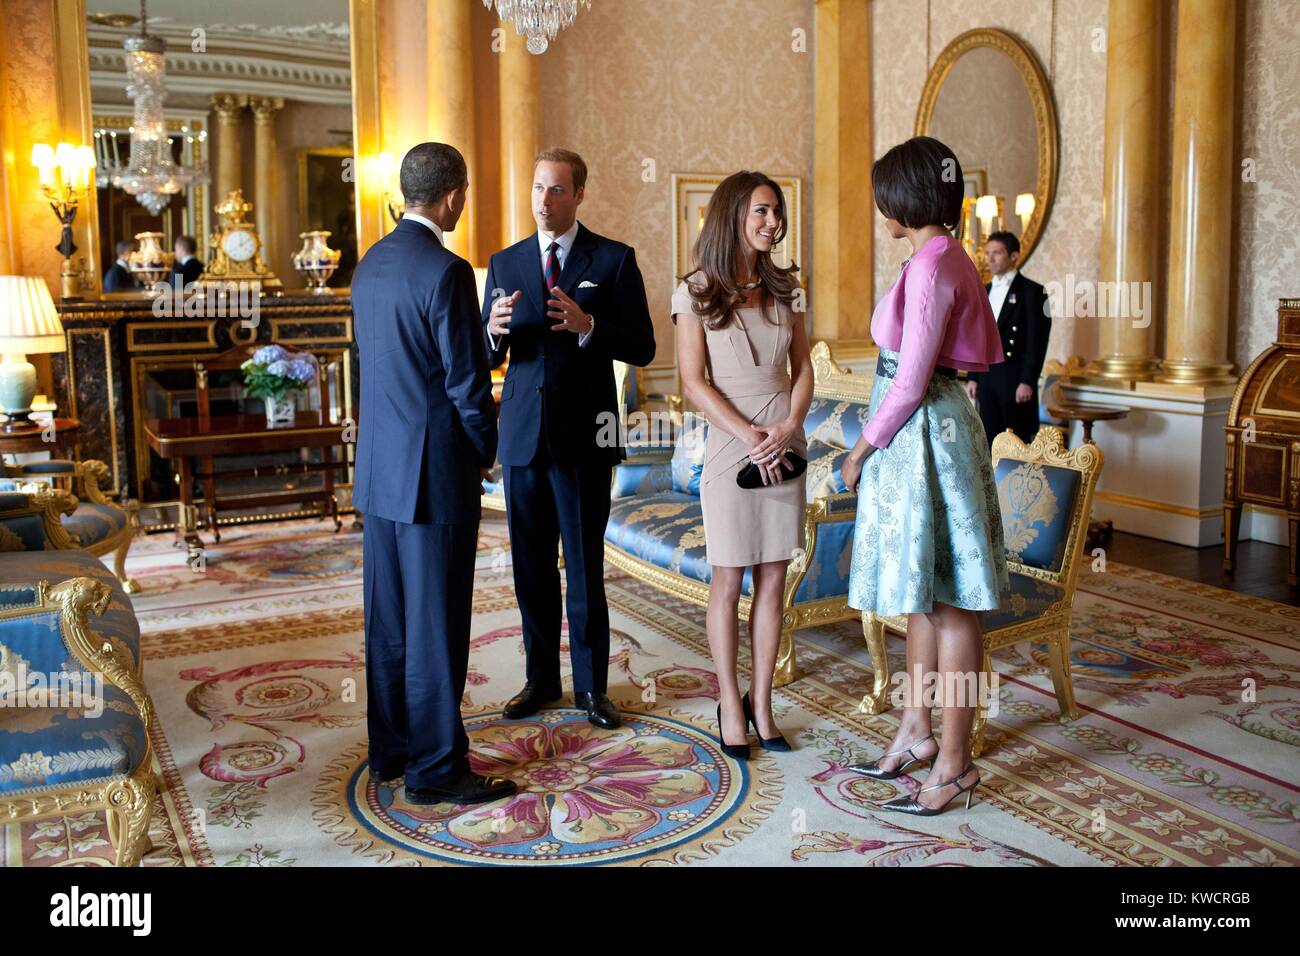 Il presidente Barack Obama e la First Lady Michelle Obama con il Duca e la Duchessa di Cambridge. Nel 1844 Stanza a Buckingham Palace a Londra, Inghilterra, 24 maggio 2011. (BSLOC 2015 3 224) Foto Stock